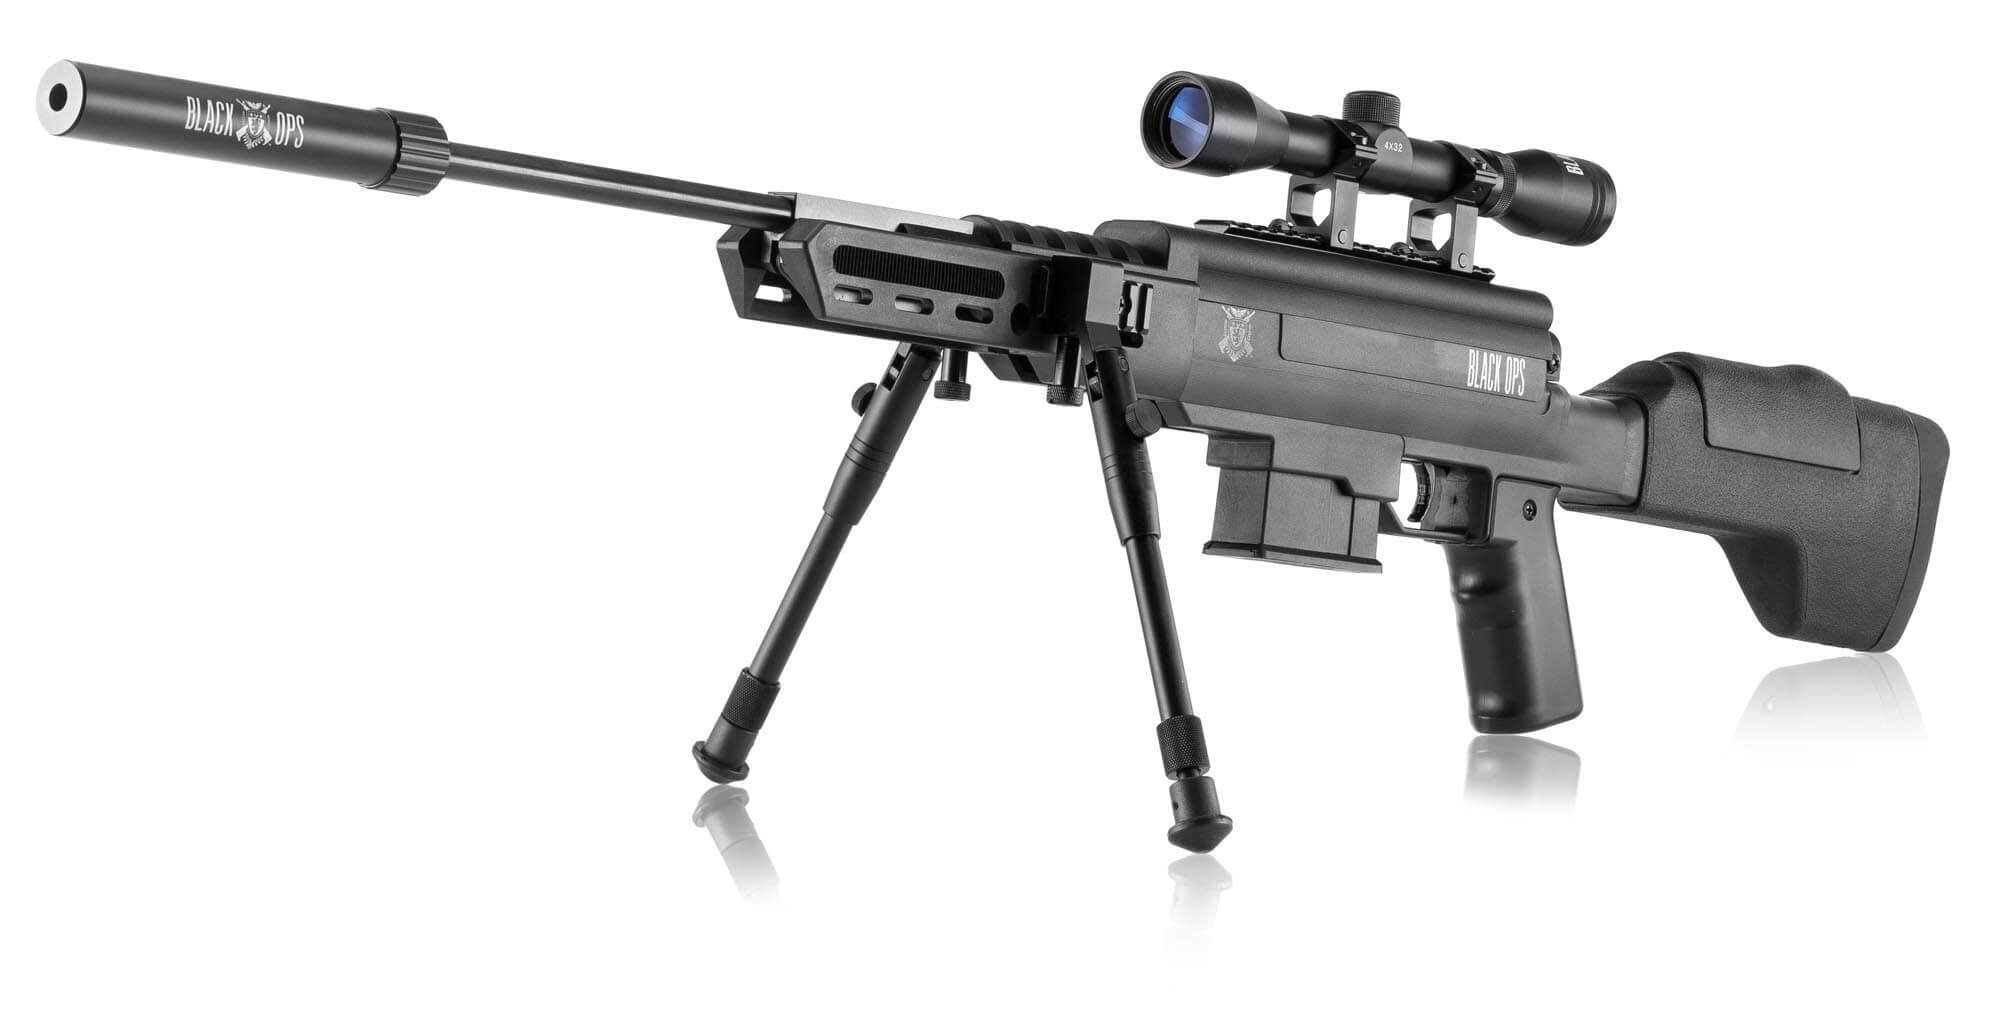 Black Ops Carabine Luftgevr 4,5 mm, Sort